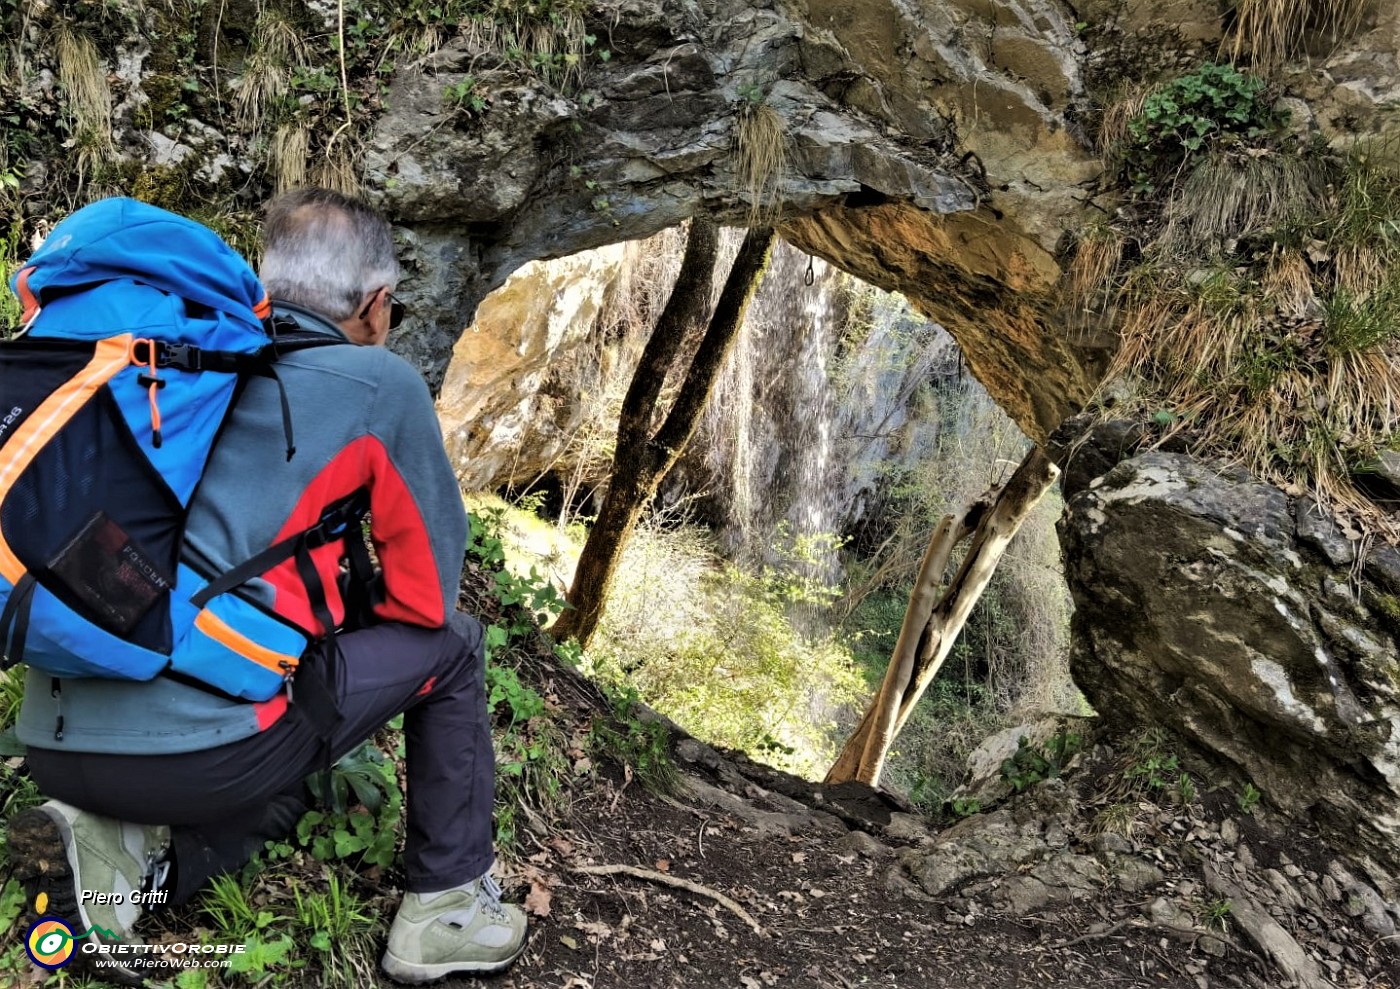 03 Alte cascate della valle di Carubbo ammirate dalla 'Grotta dei ladri'.jpg